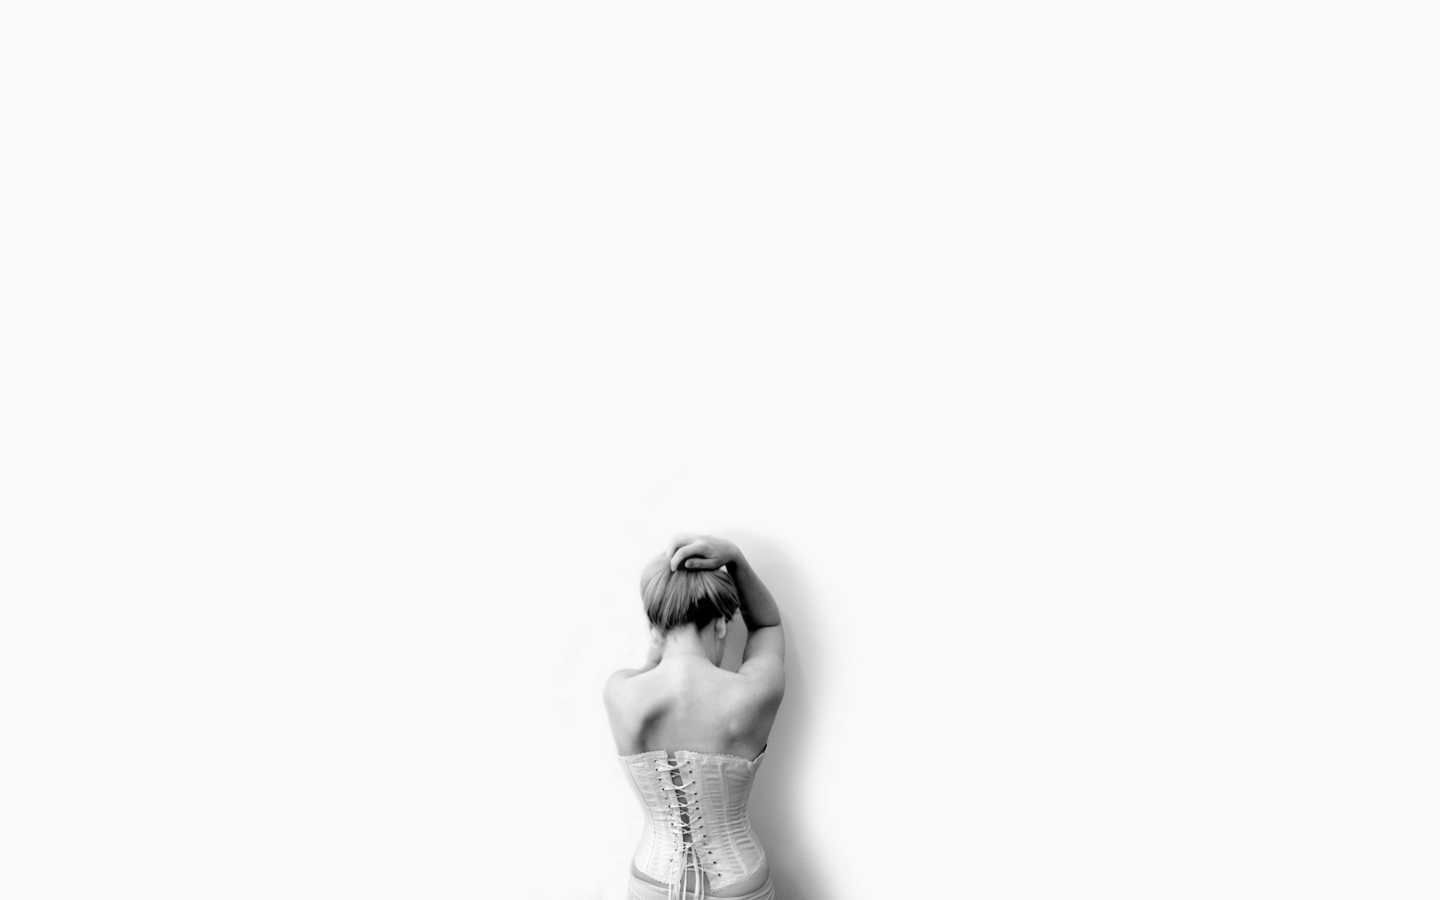 Das White Sadness Wallpaper 1440x900